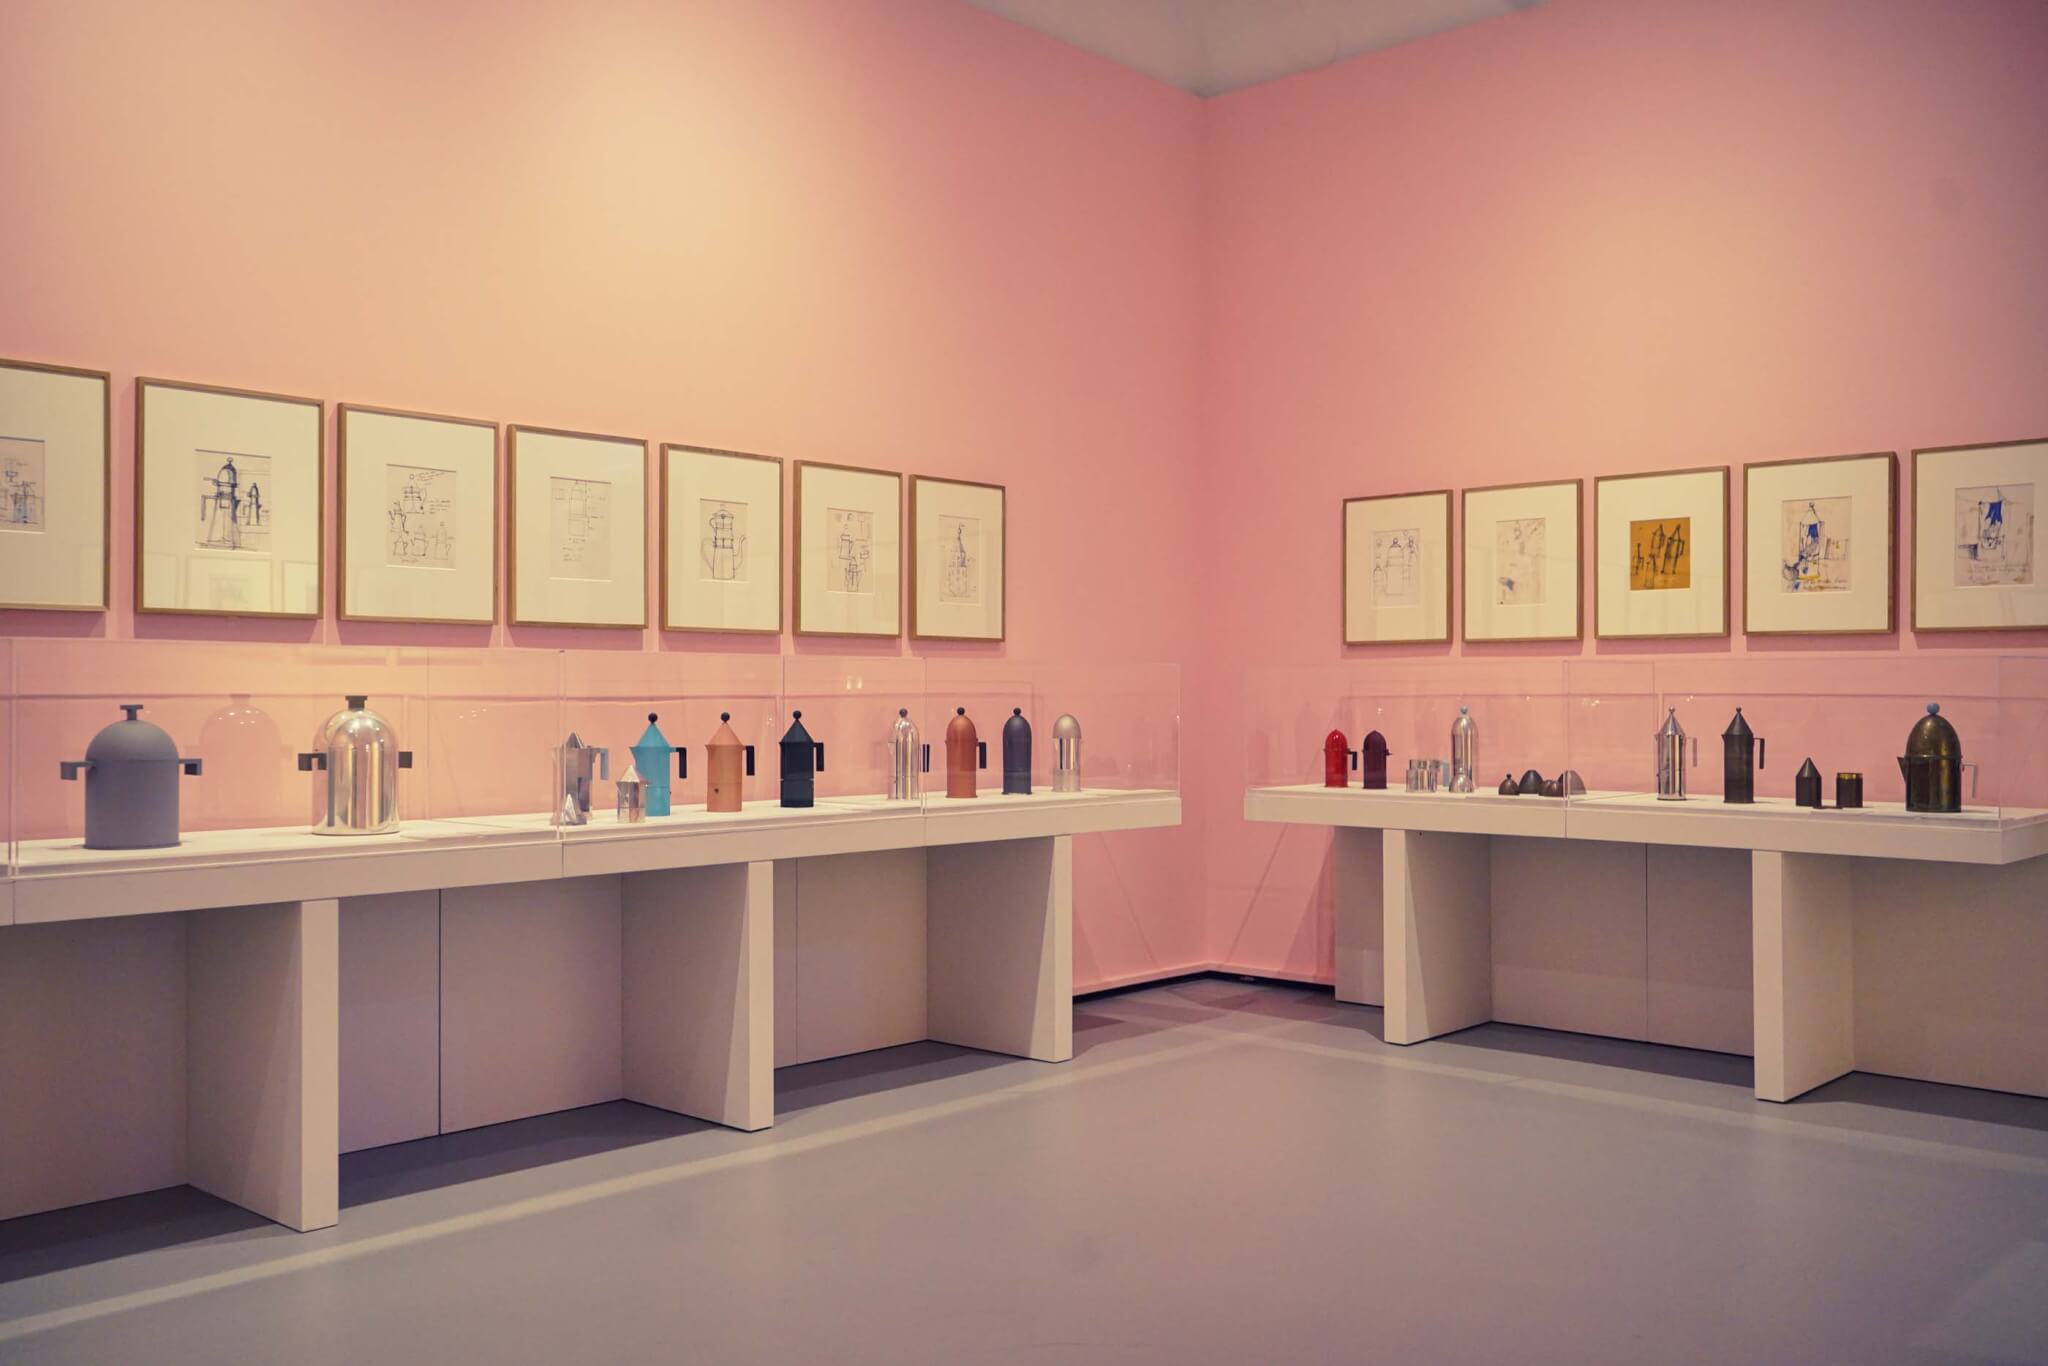 粉色的墙壁上画着草图，书架上摆放着咖啡壶